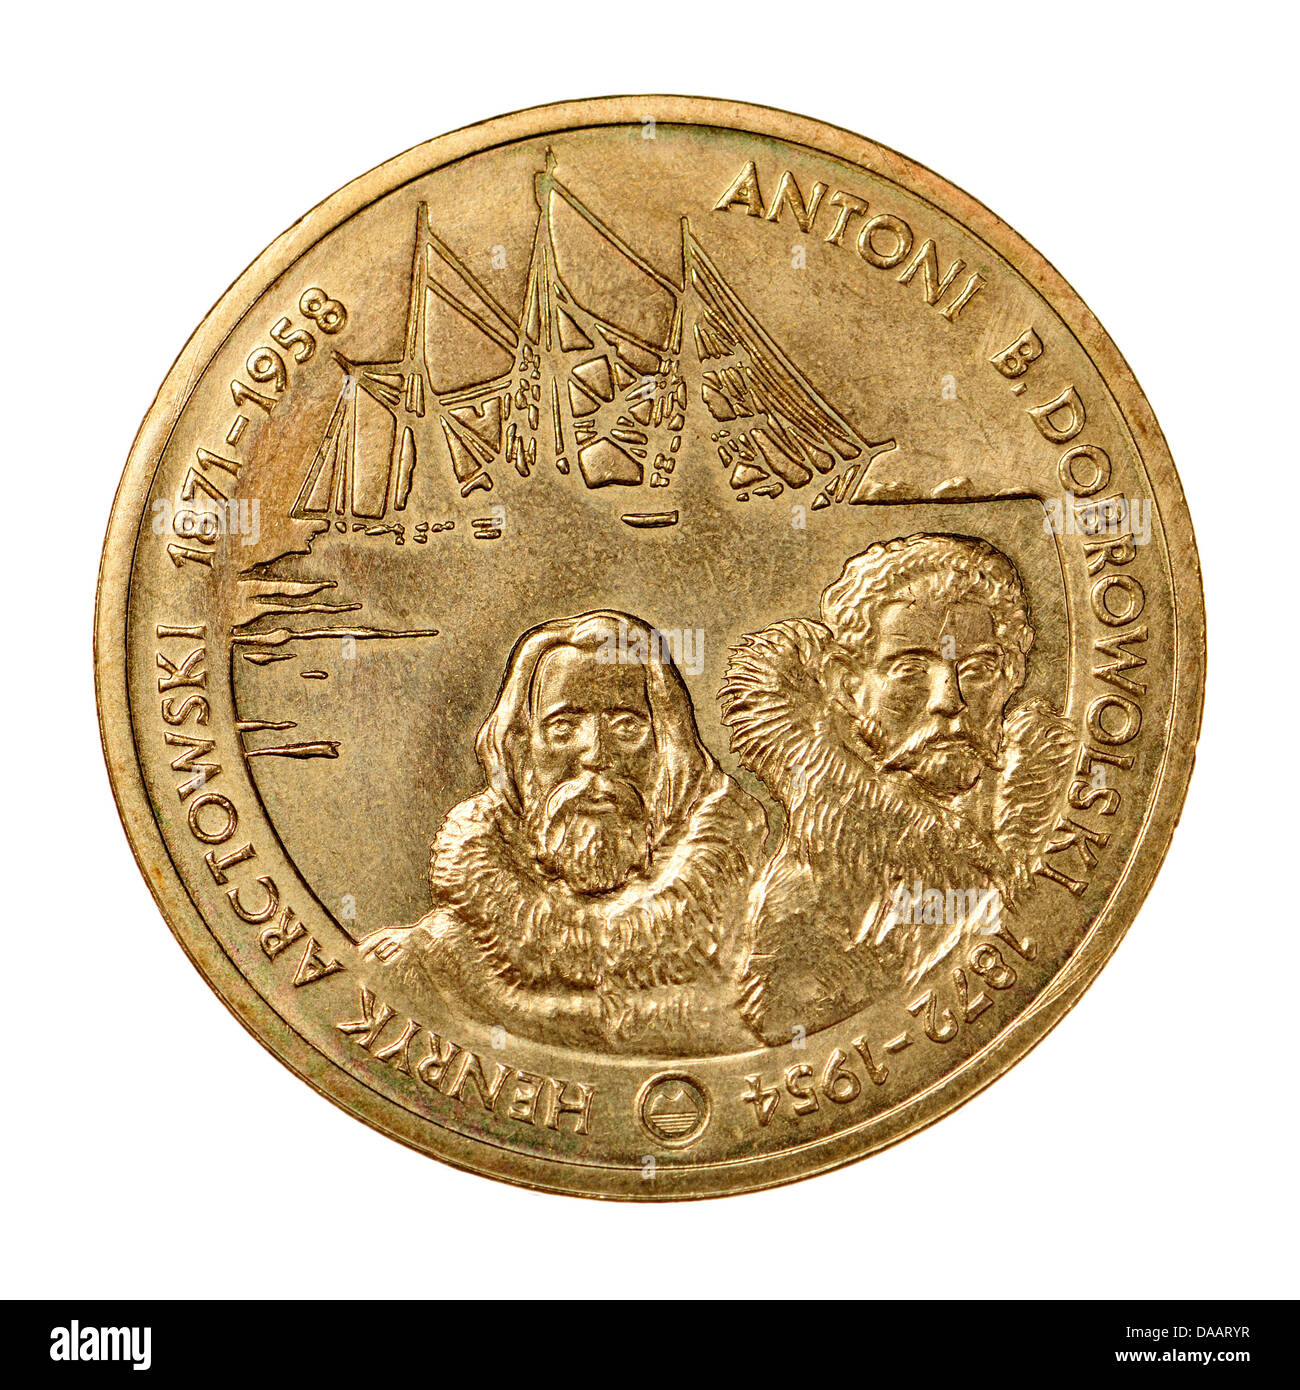 2zl polonais monnaie commémorative dans 'Nordic Gold'. Henryk Arctowski (1871-1958) et Antoni Dobrowolski (1872-1954) Banque D'Images